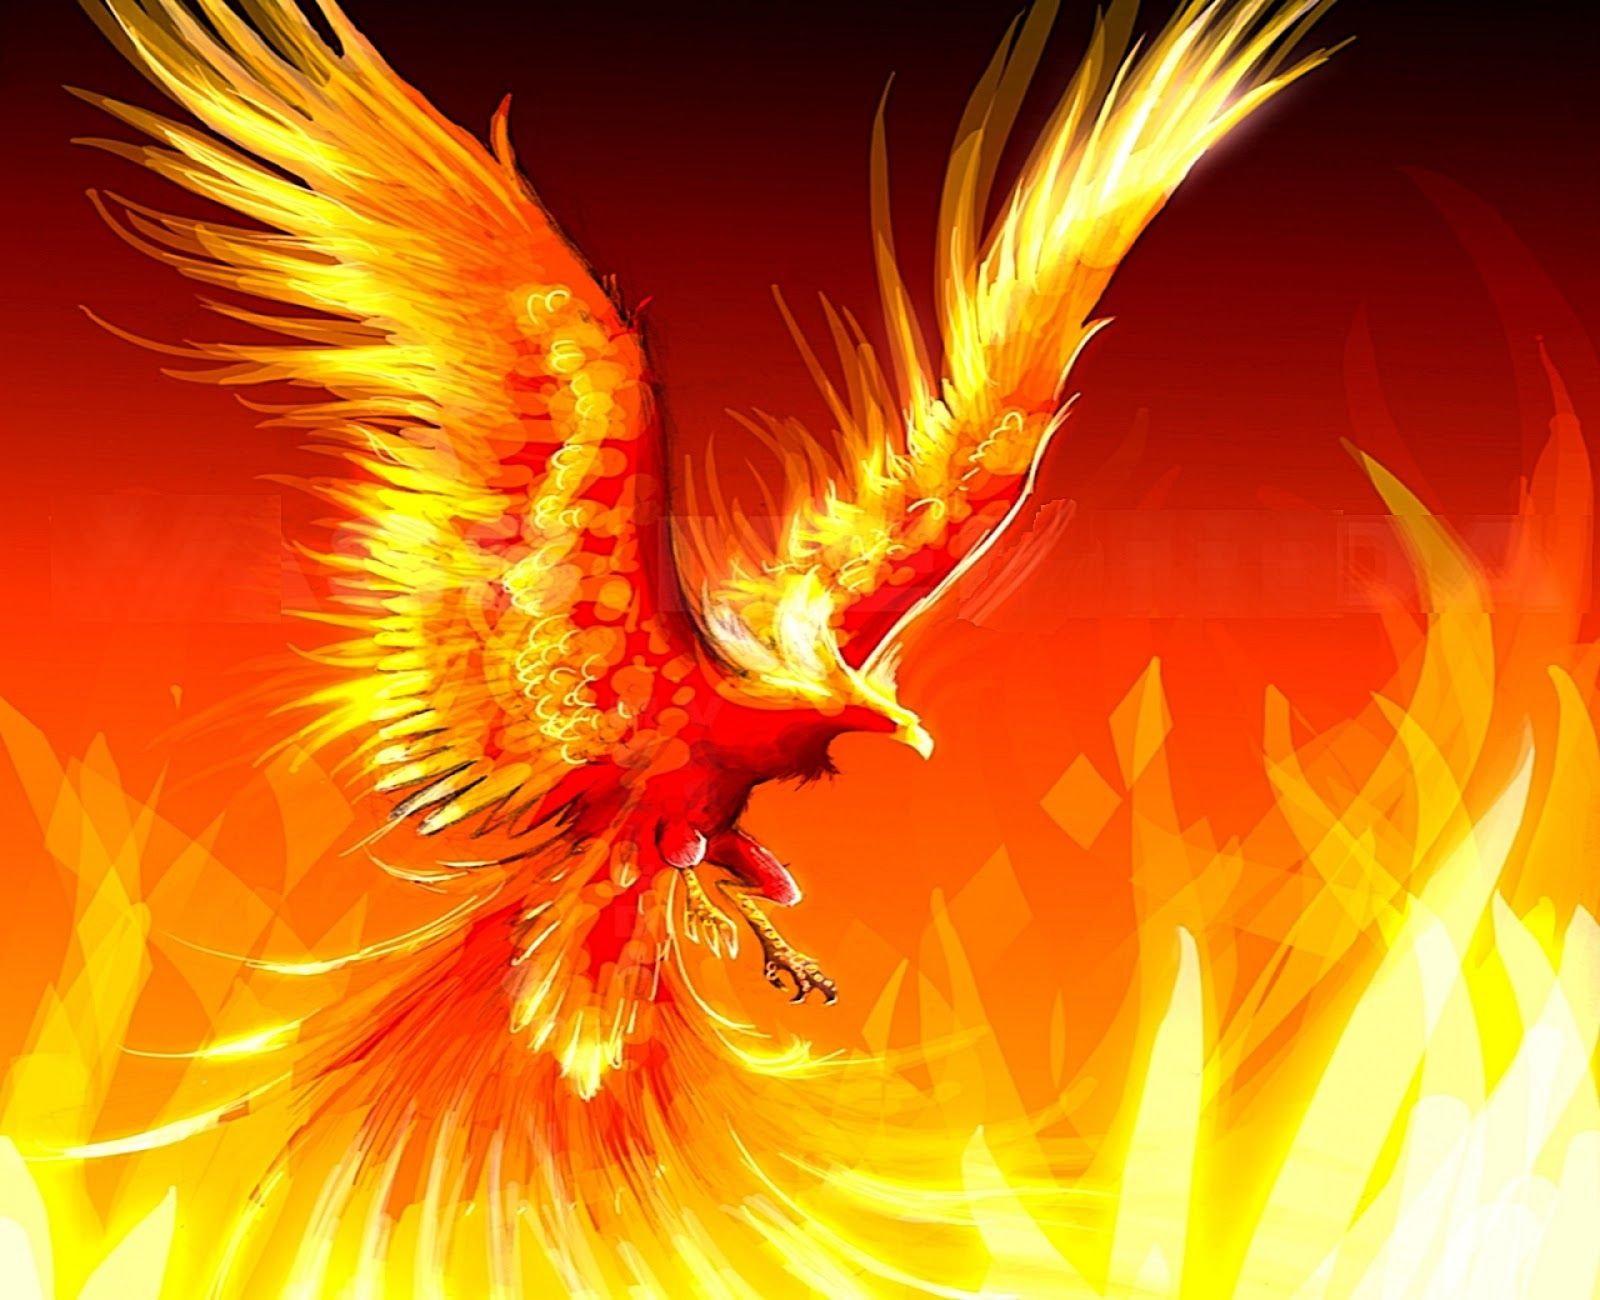 GtHHdlY_zfo UUX67jQkfCI AAAAAAAACmg 3zI3TZHNe6M S1600 Cool Fire Wallpaper. Phoenix Artwork, Phoenix Bird Tattoos, Phoenix Harry Potter